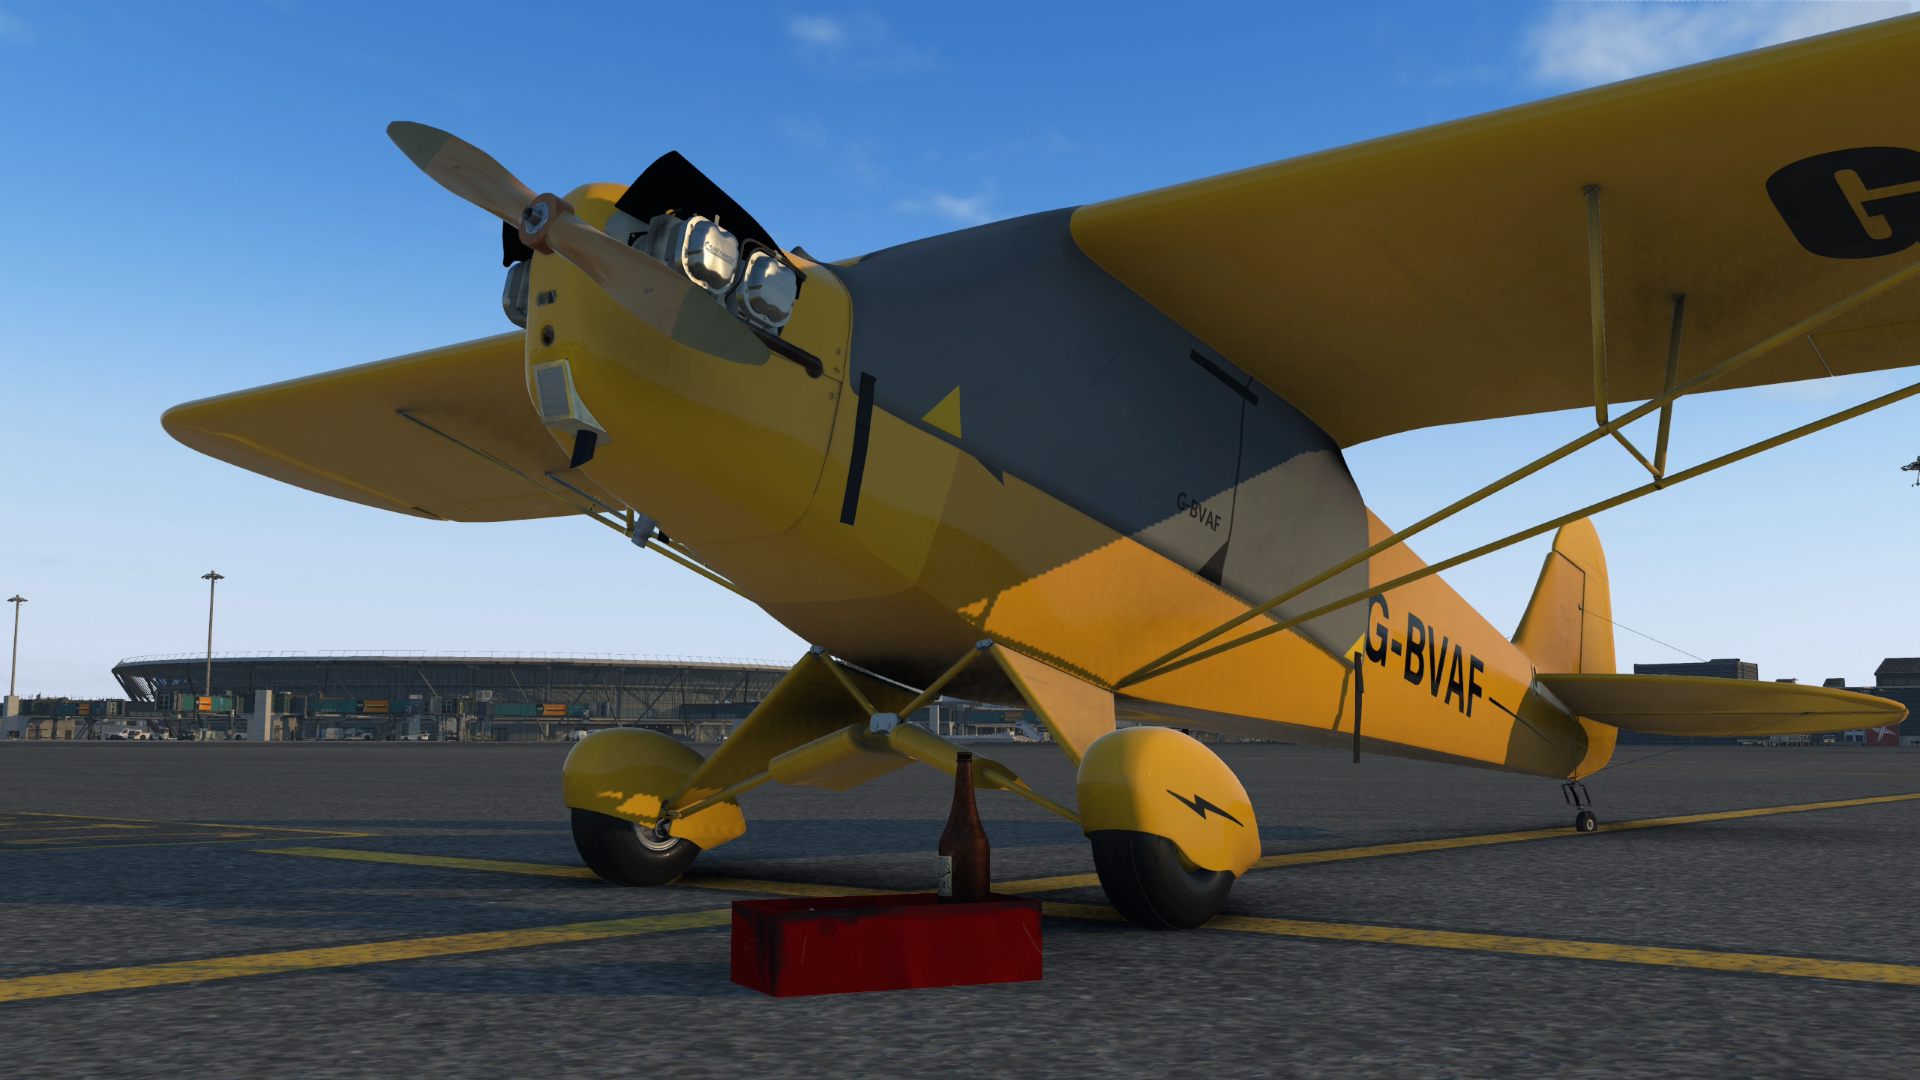 SimSolutions Announces J3 Cub for X-Plane - IniBuilds, SimSolutions, X-Plane